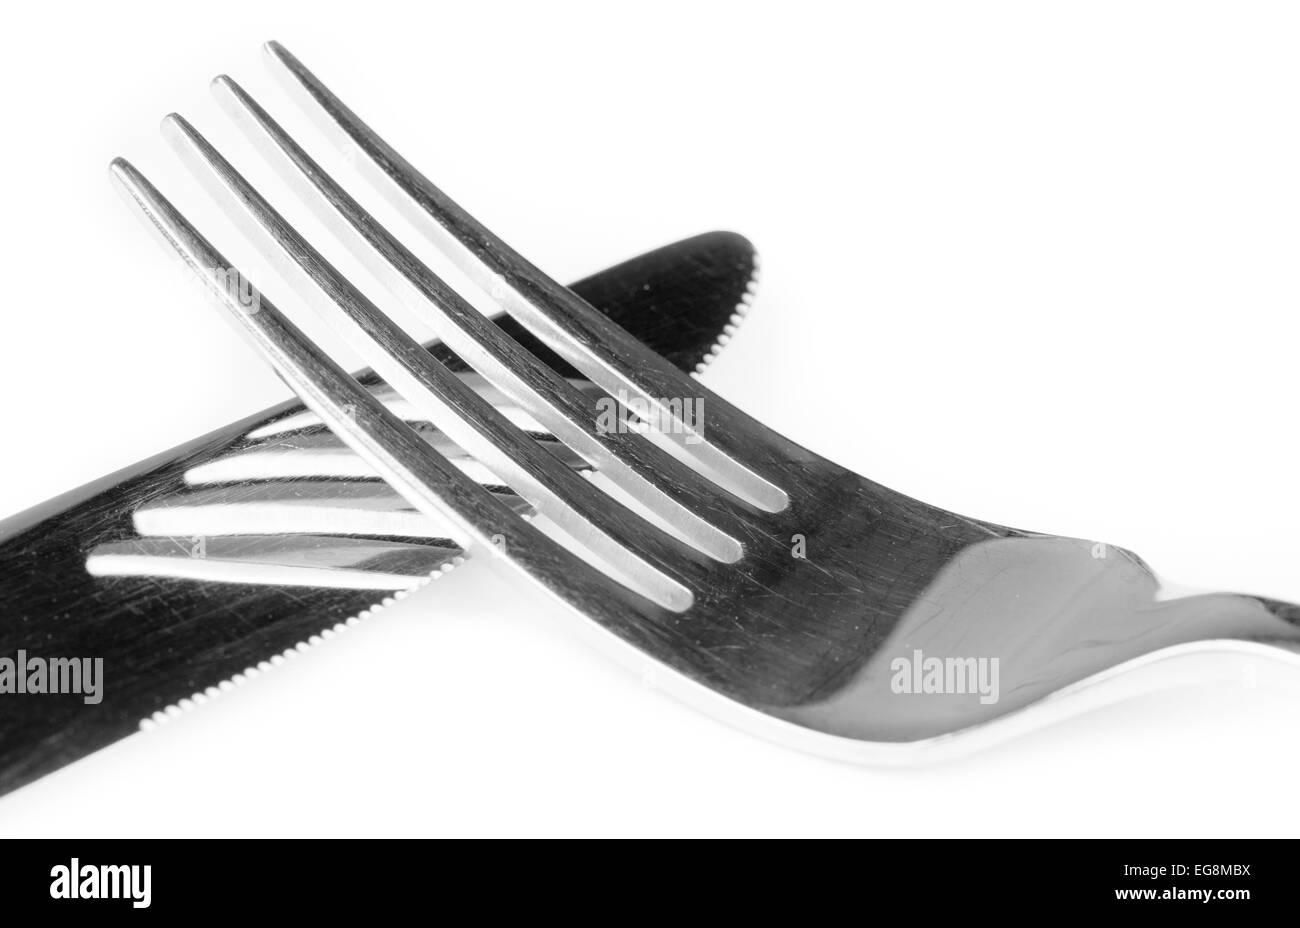 Edelstahl Messer und Gabel. Besteck oder Geschirr Nahaufnahme. Stockfoto